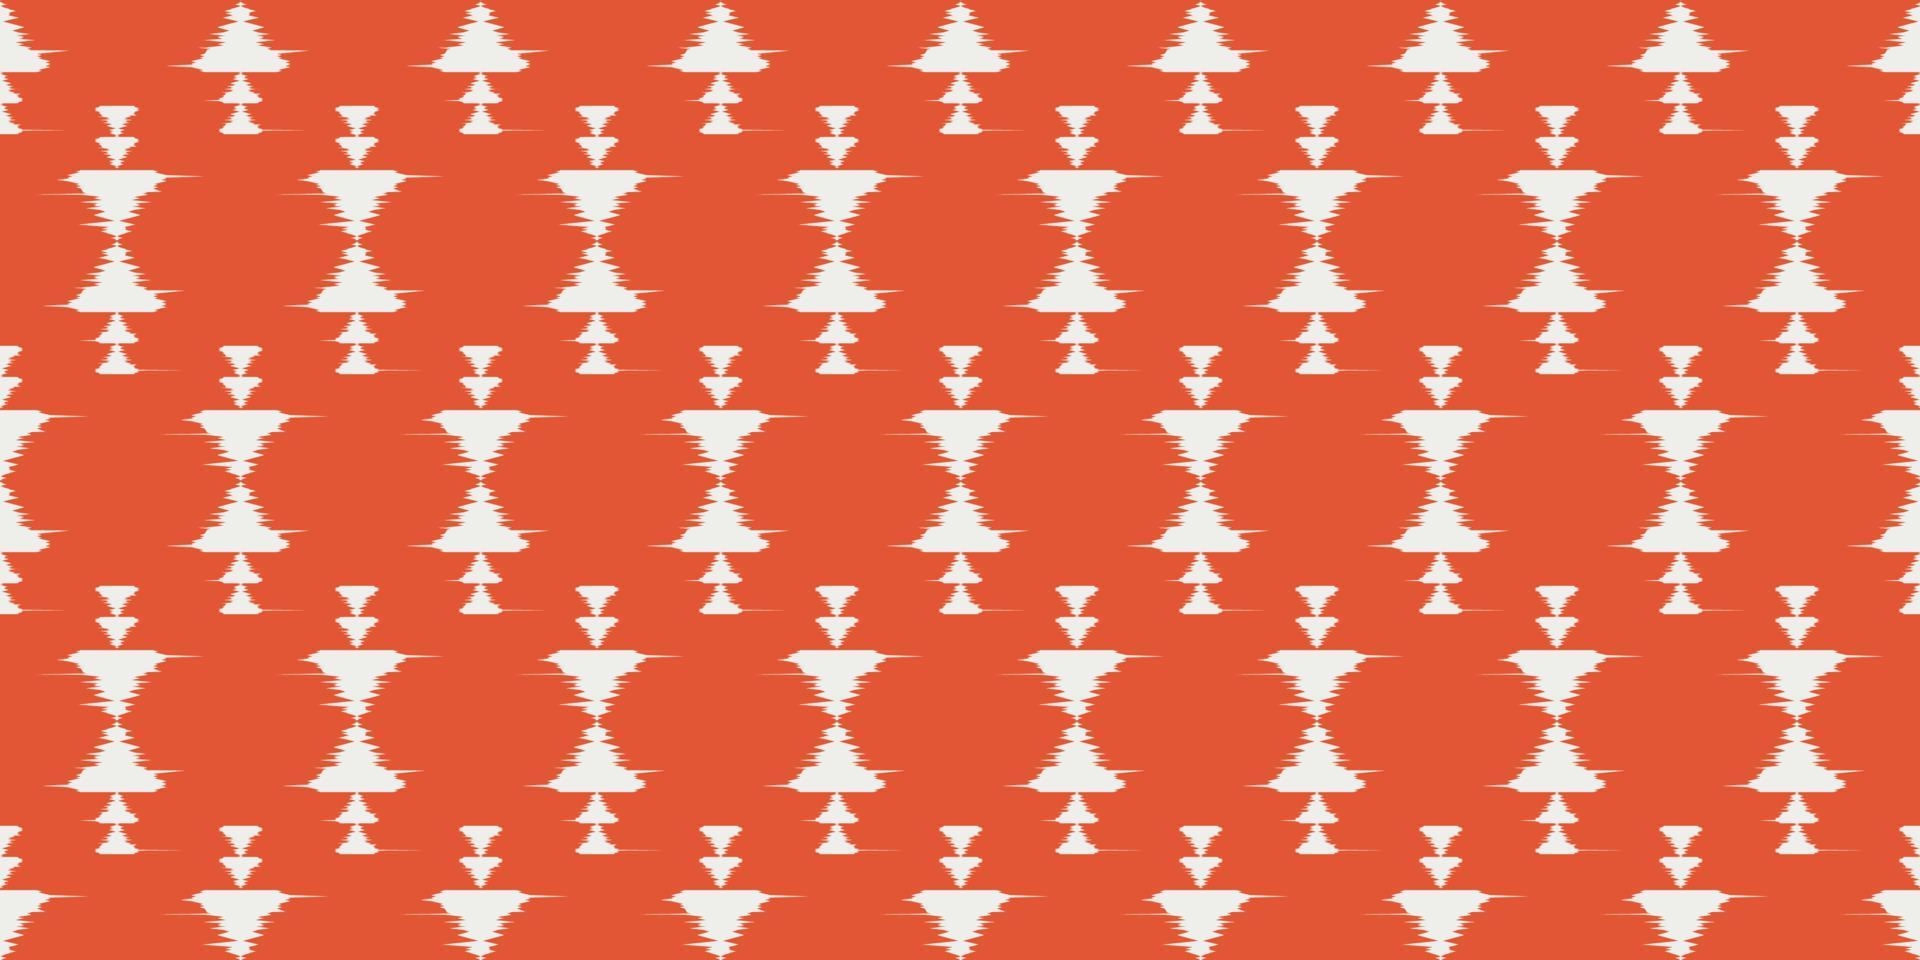 lindo fundo vermelho ikat. padrão sem emenda navajo em bordados tribais, folclóricos, impressão de ornamento geométrico asteca mexicano. design para tapete, papel de parede, roupas, embrulho, tecido, capa, têxtil vetor